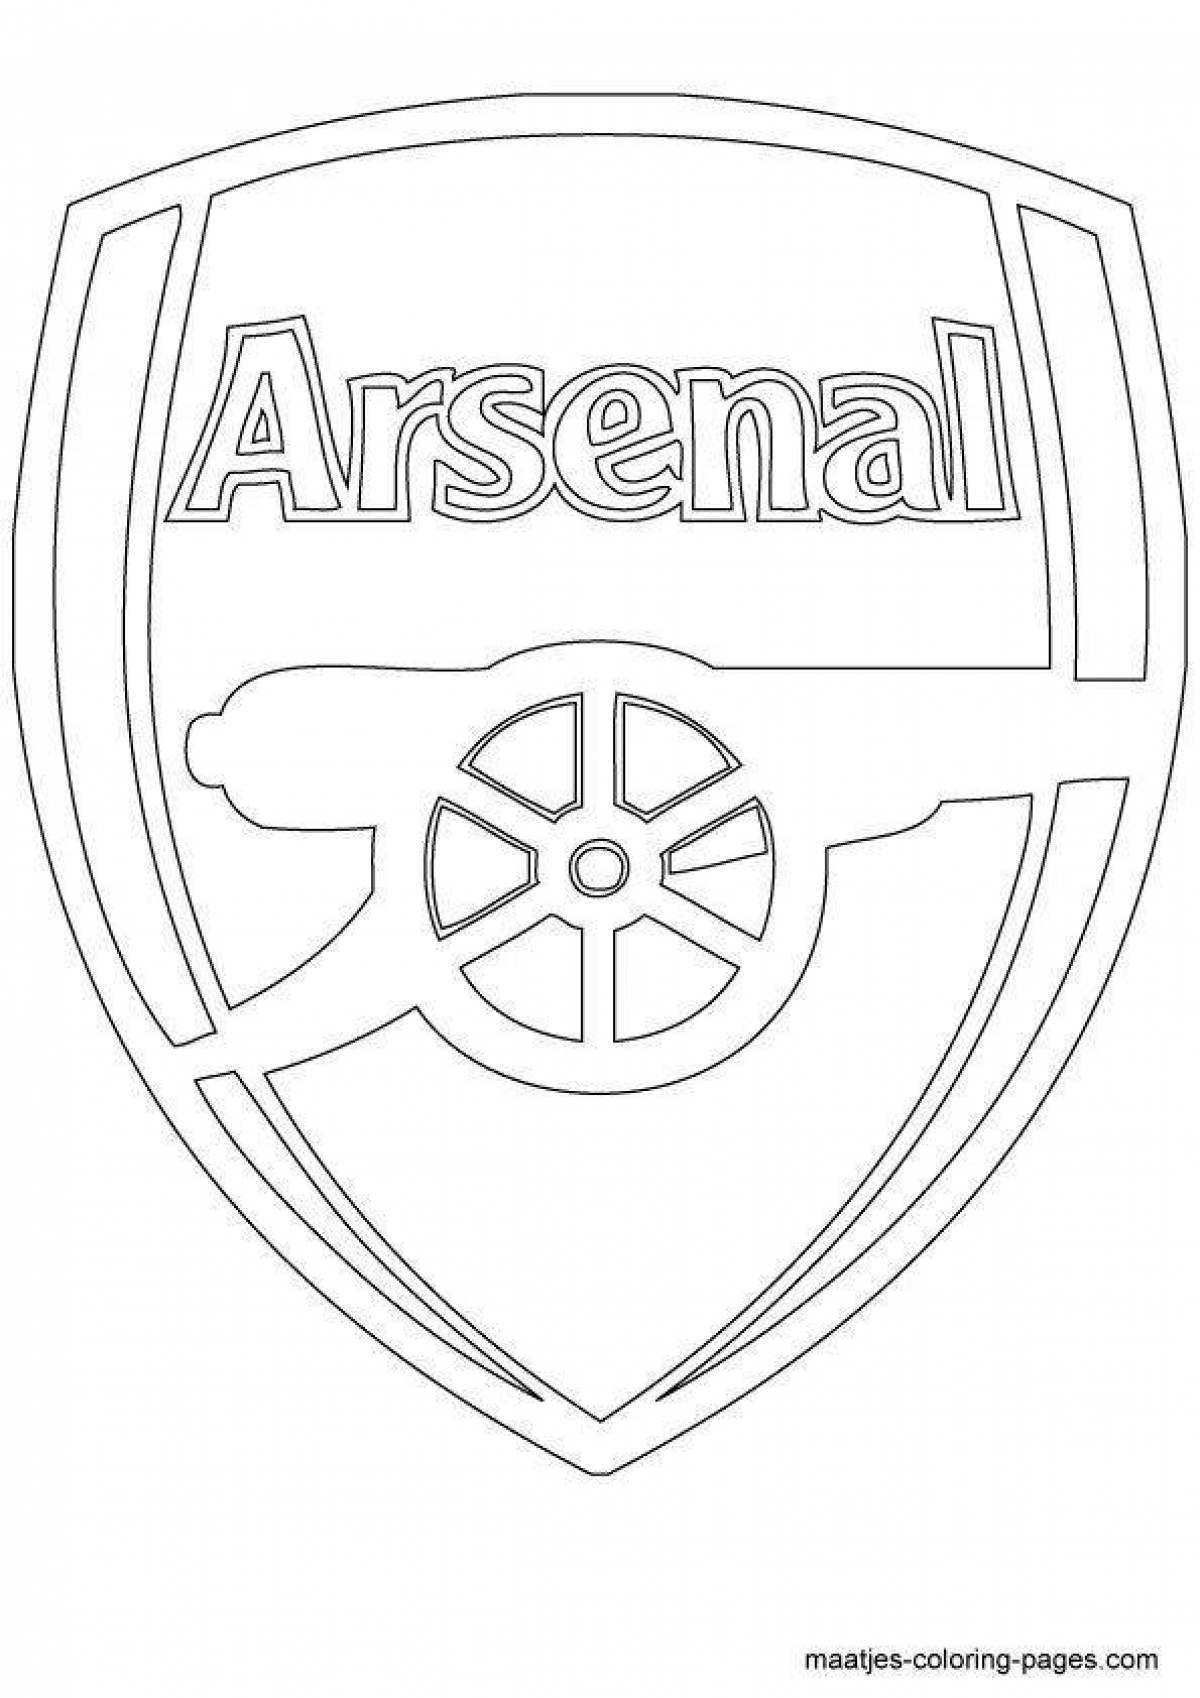 Football club emblem dazzling coloring